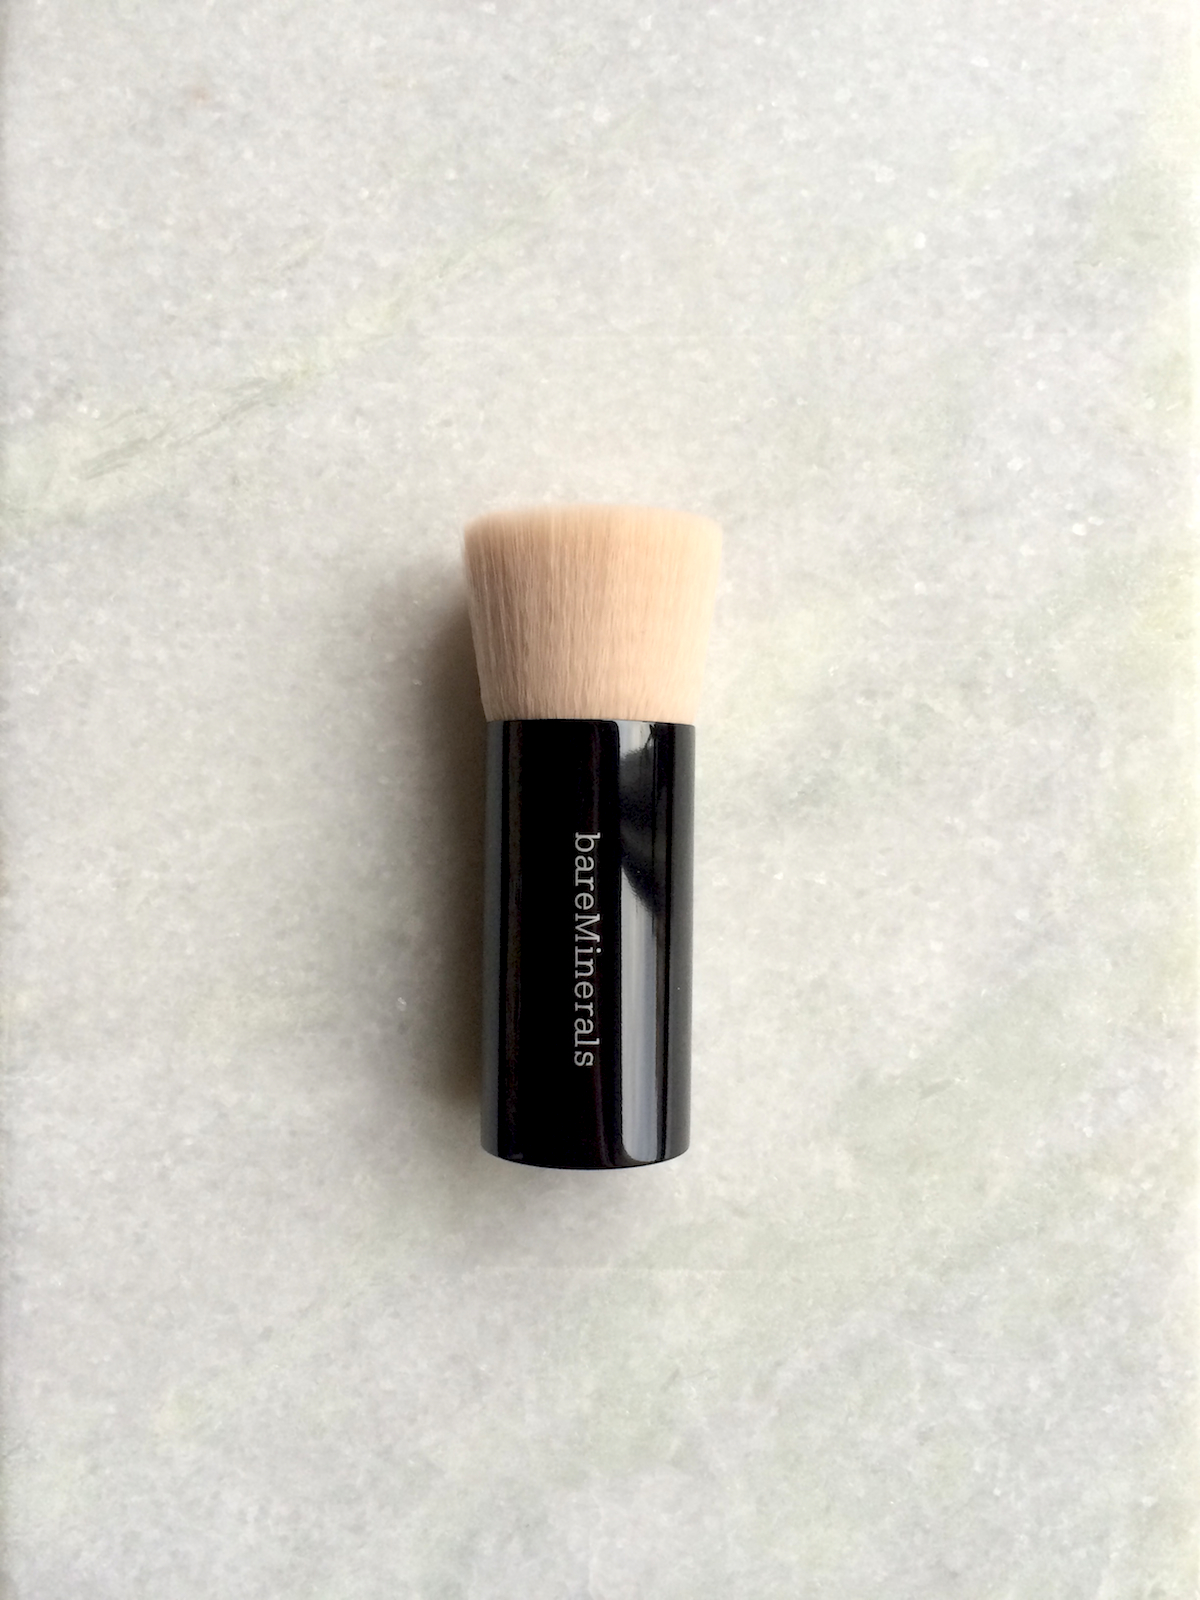 bareminerals beautiful finish brush from above|skonhetssnack.se